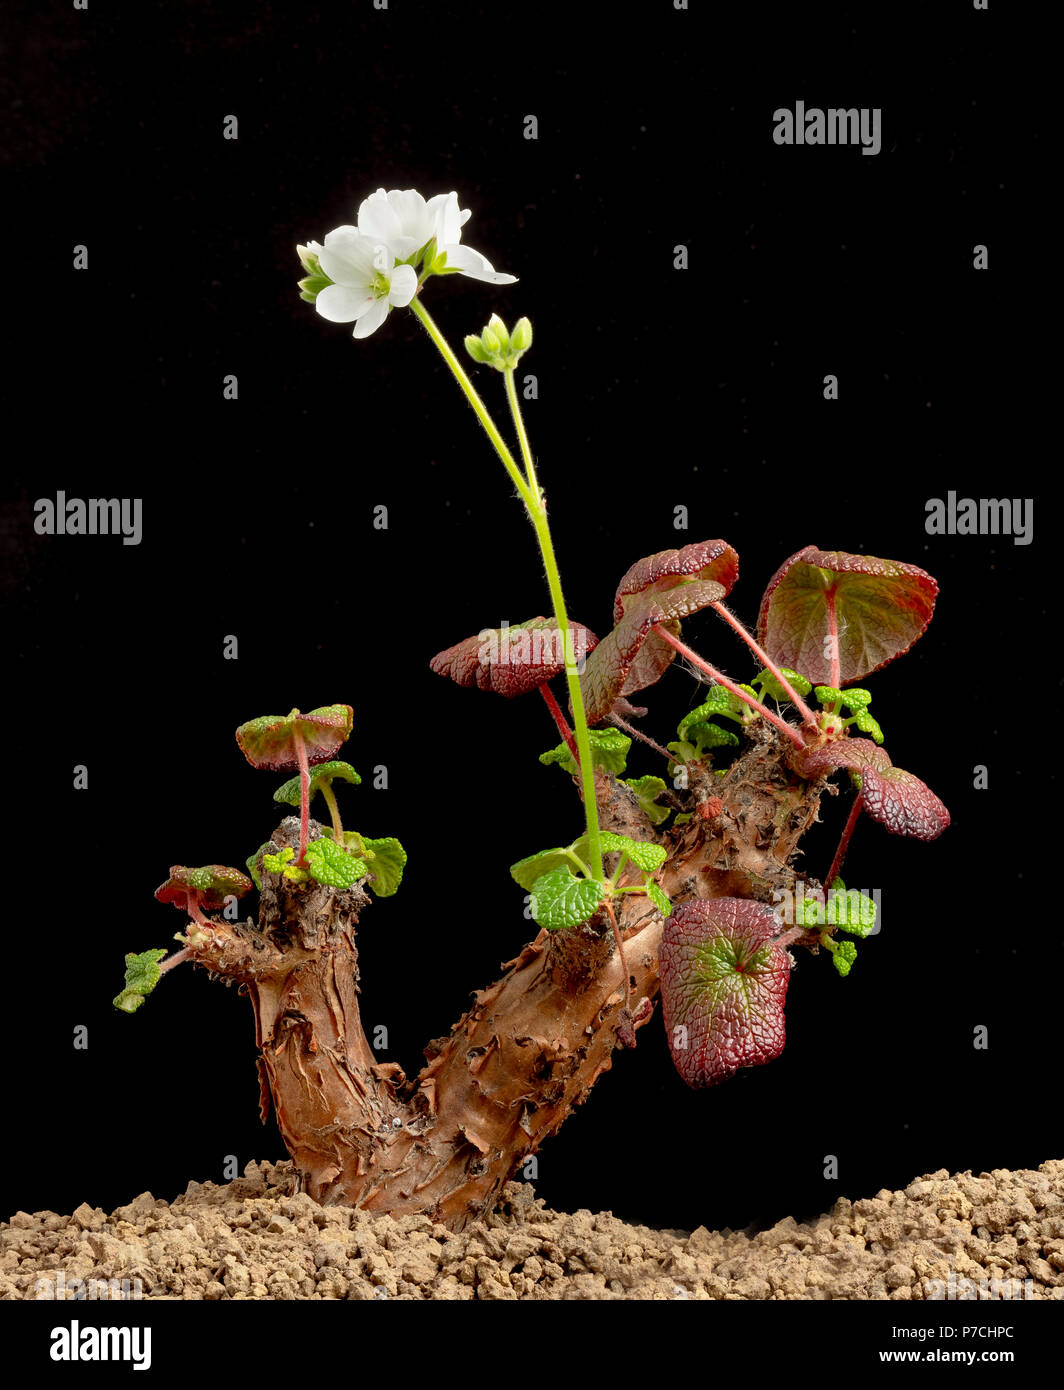 Vieux père vivre éternellement, Pelargonium cotyledonis, une plante succulente endémique de Sainte-Hélène, où il est en danger critique d'extinction Banque D'Images